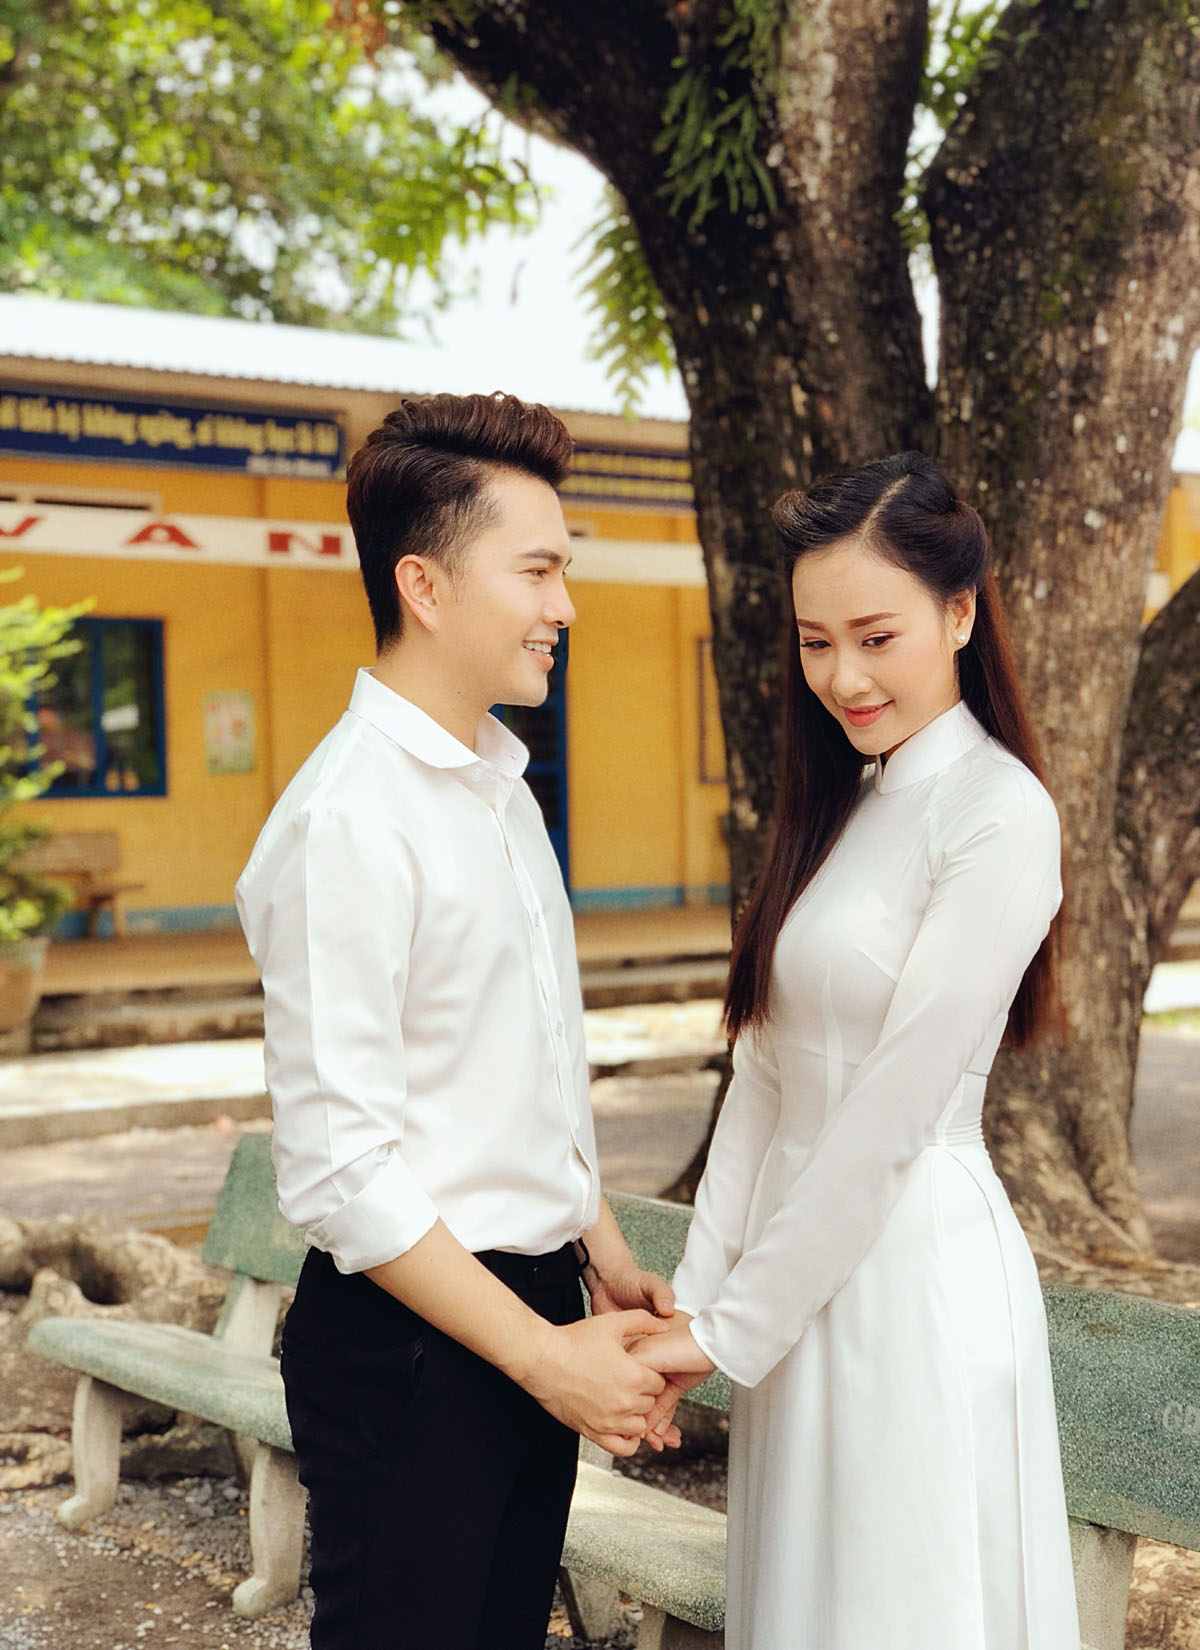 Ra MV Bolero 'Tuổi Học Trò', Nam Cường - Hà Thuý Anh là cặp đôi mới của showbiz Việt